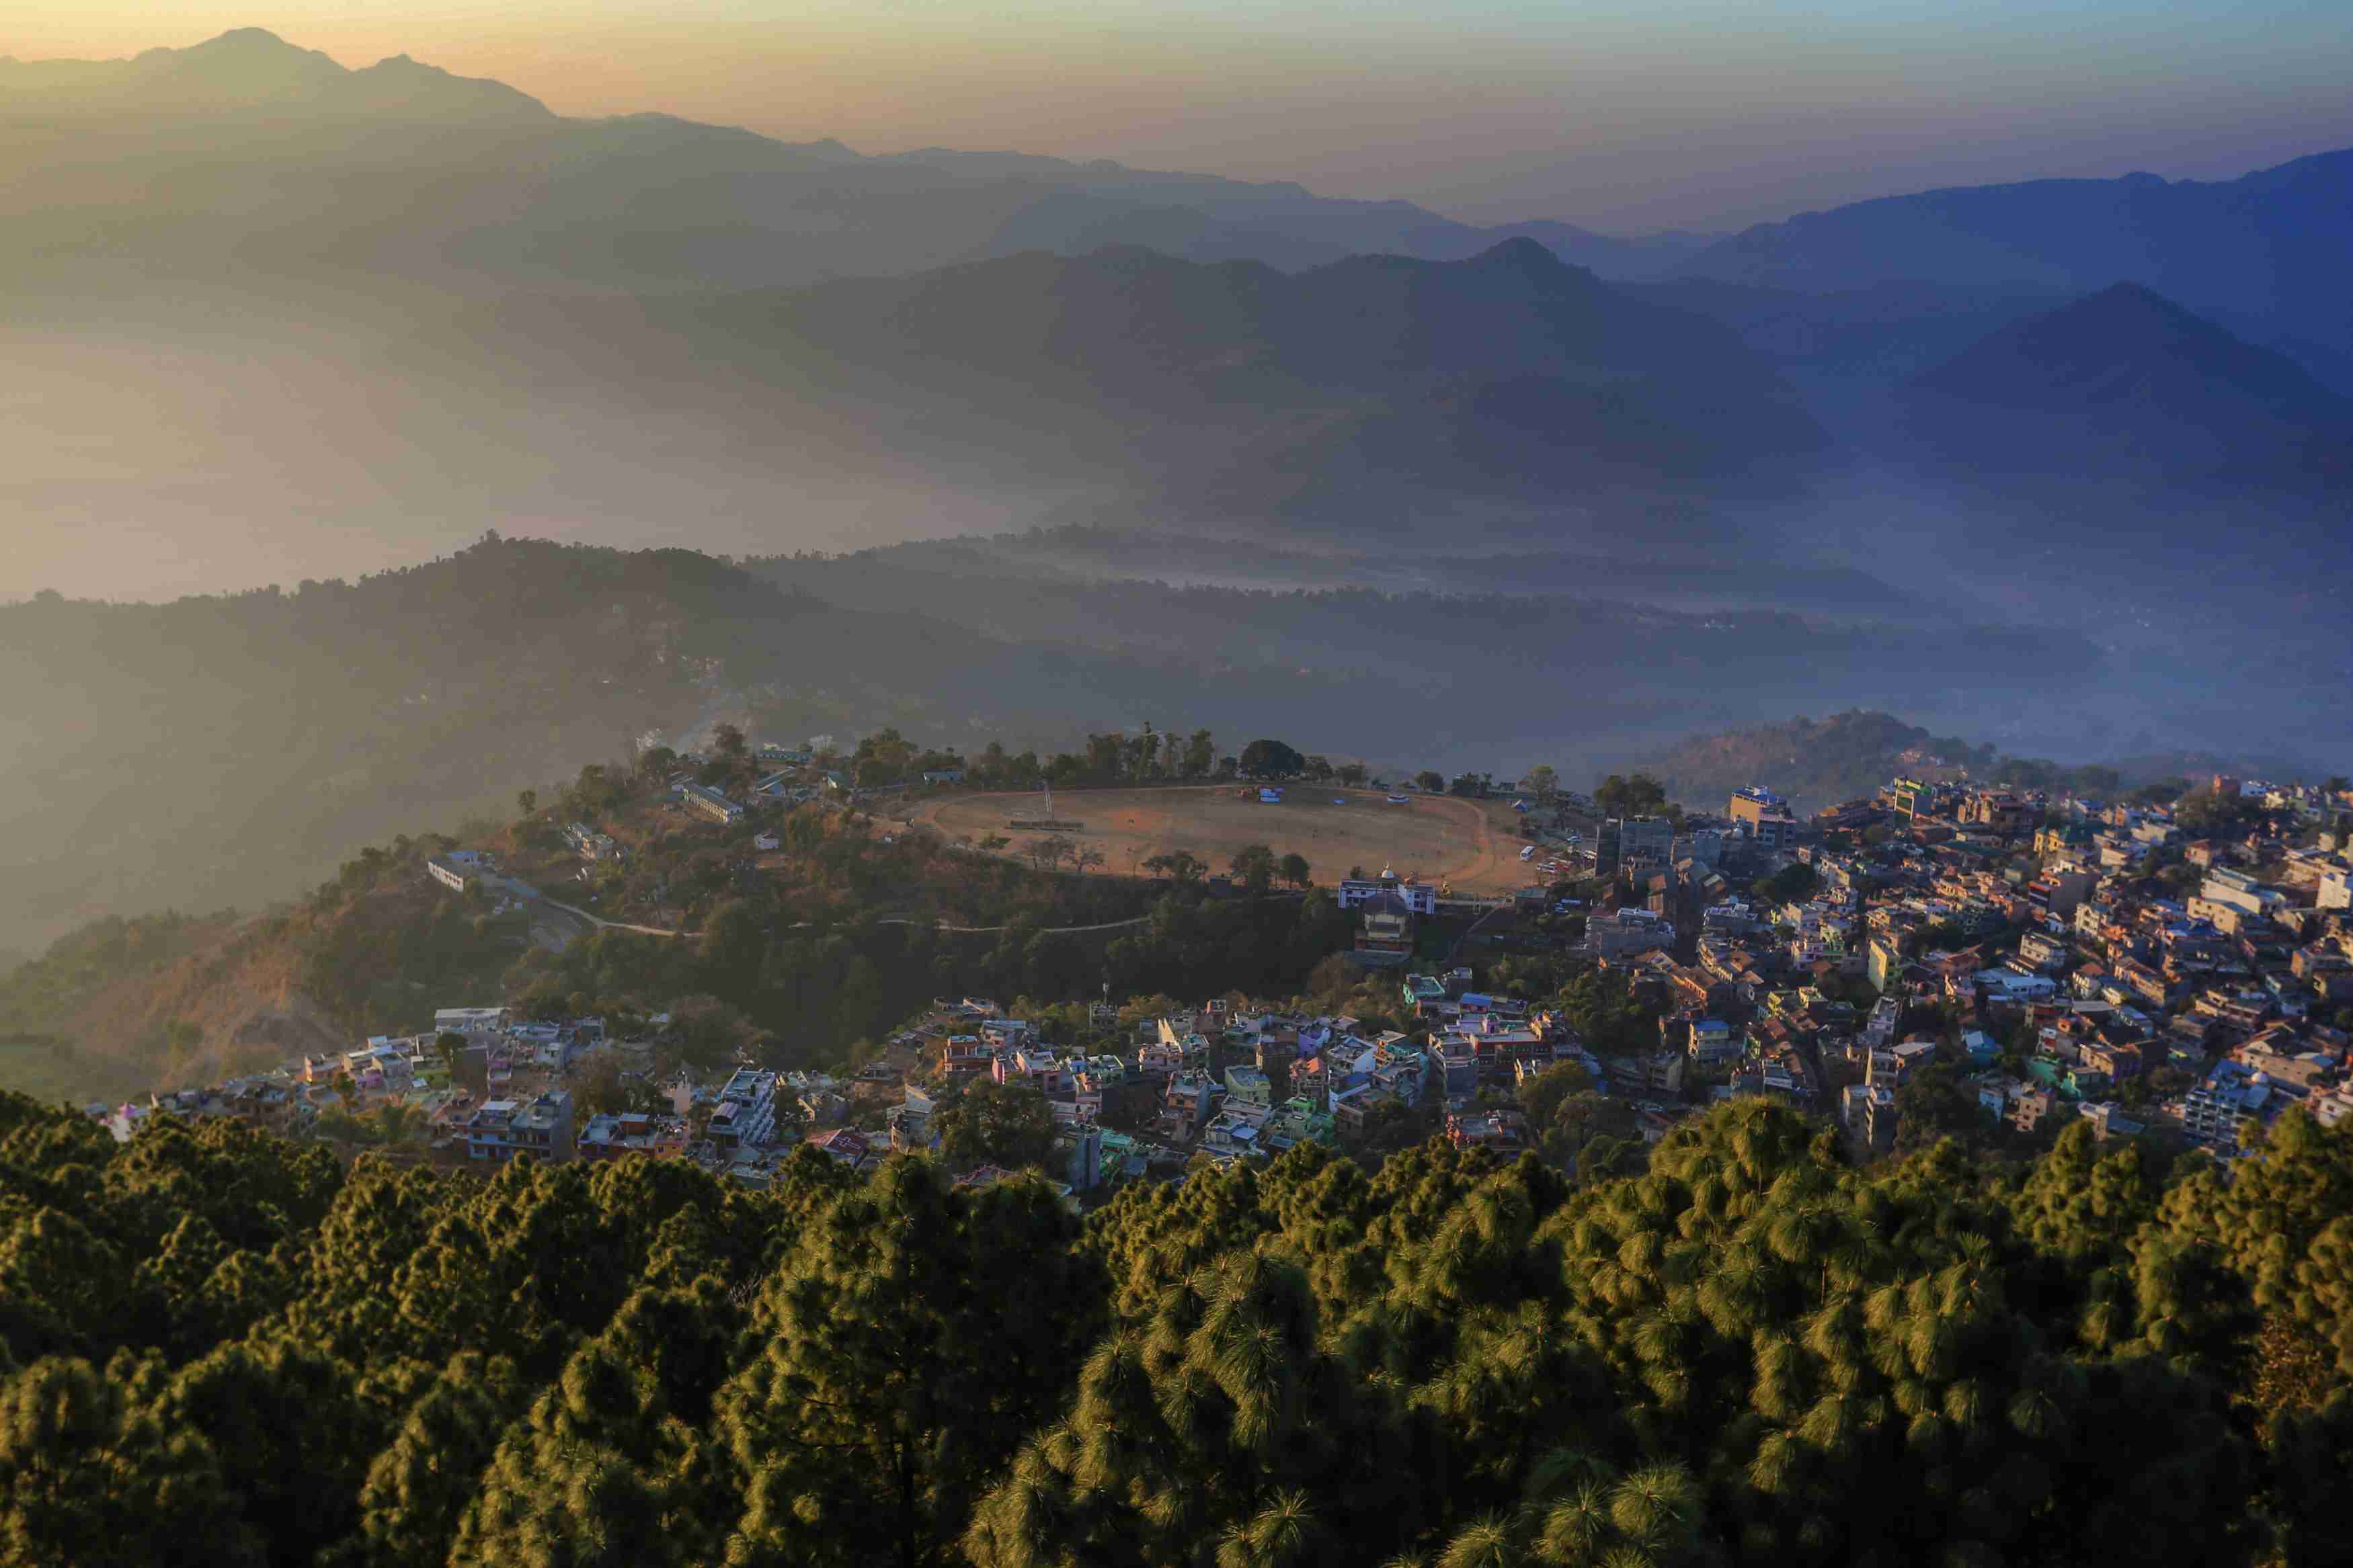 Tansen as seen from Srinagar hill, Palpa